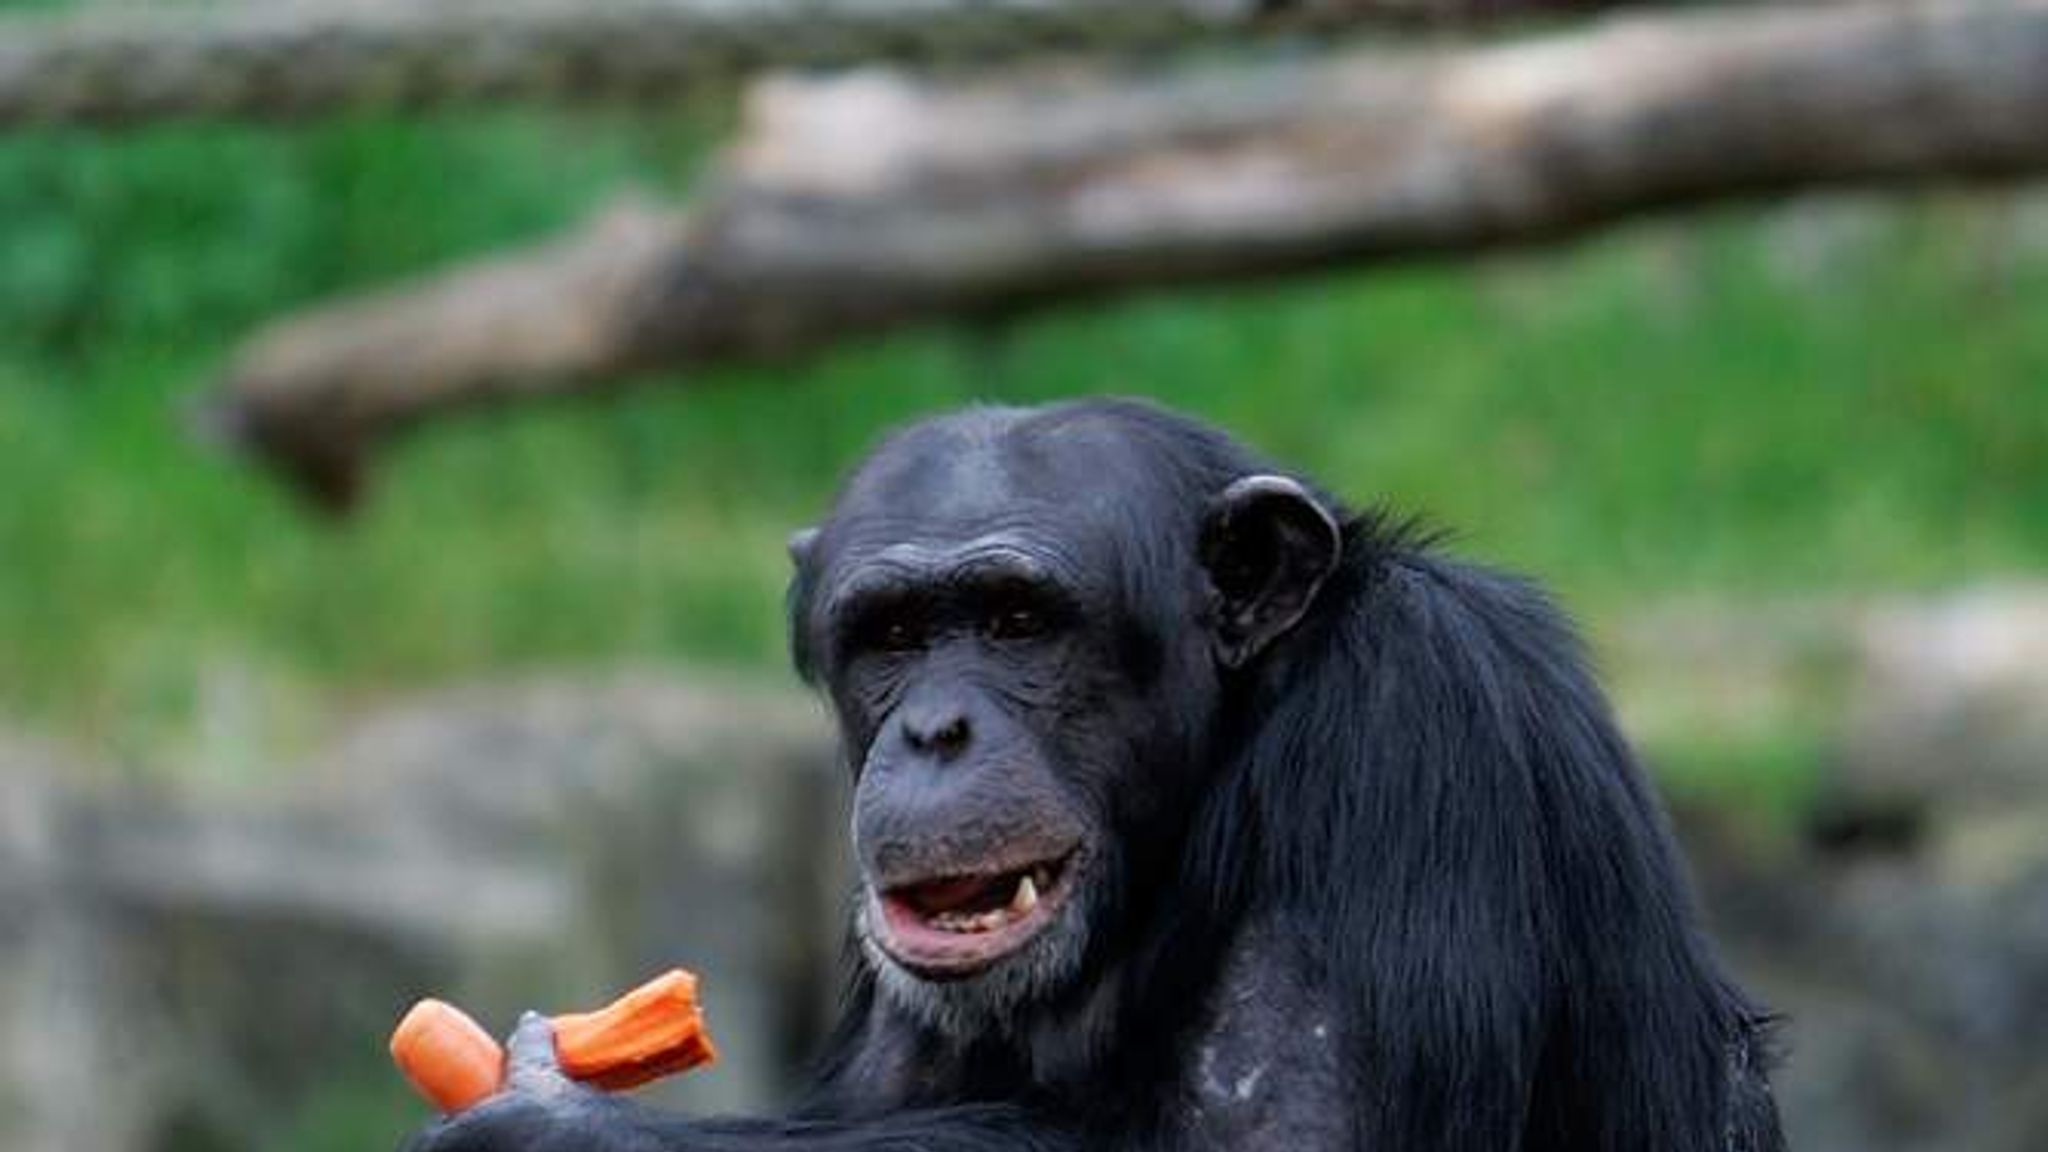 chimpanzee attack